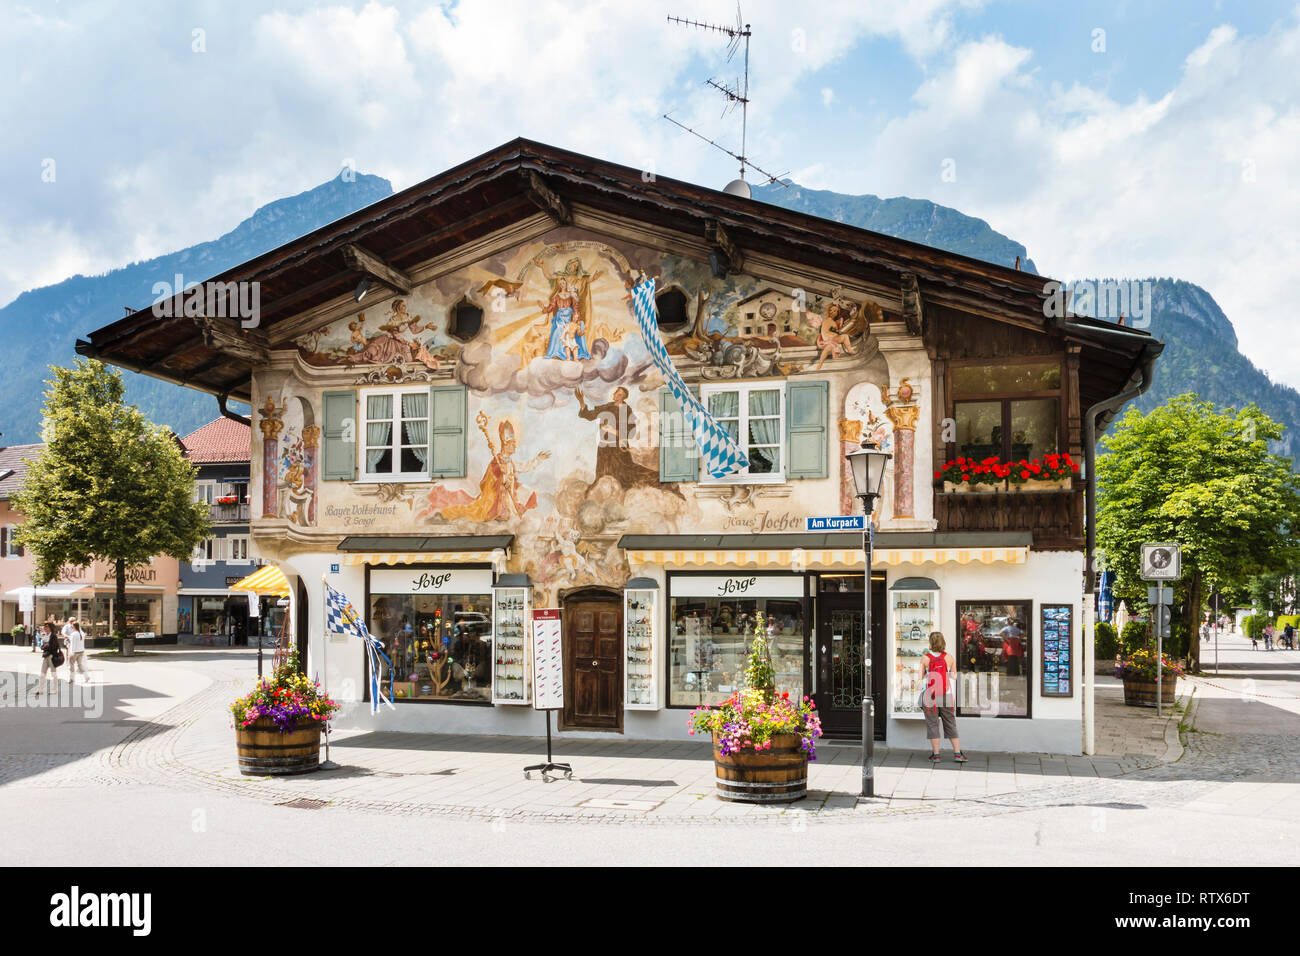 GARMISCH - Juillet 6 : bâtiment peint historique Haus Jocher à Garmisch-Partenkirchen, Allemagne en été le 6 juillet 2016. Banque D'Images